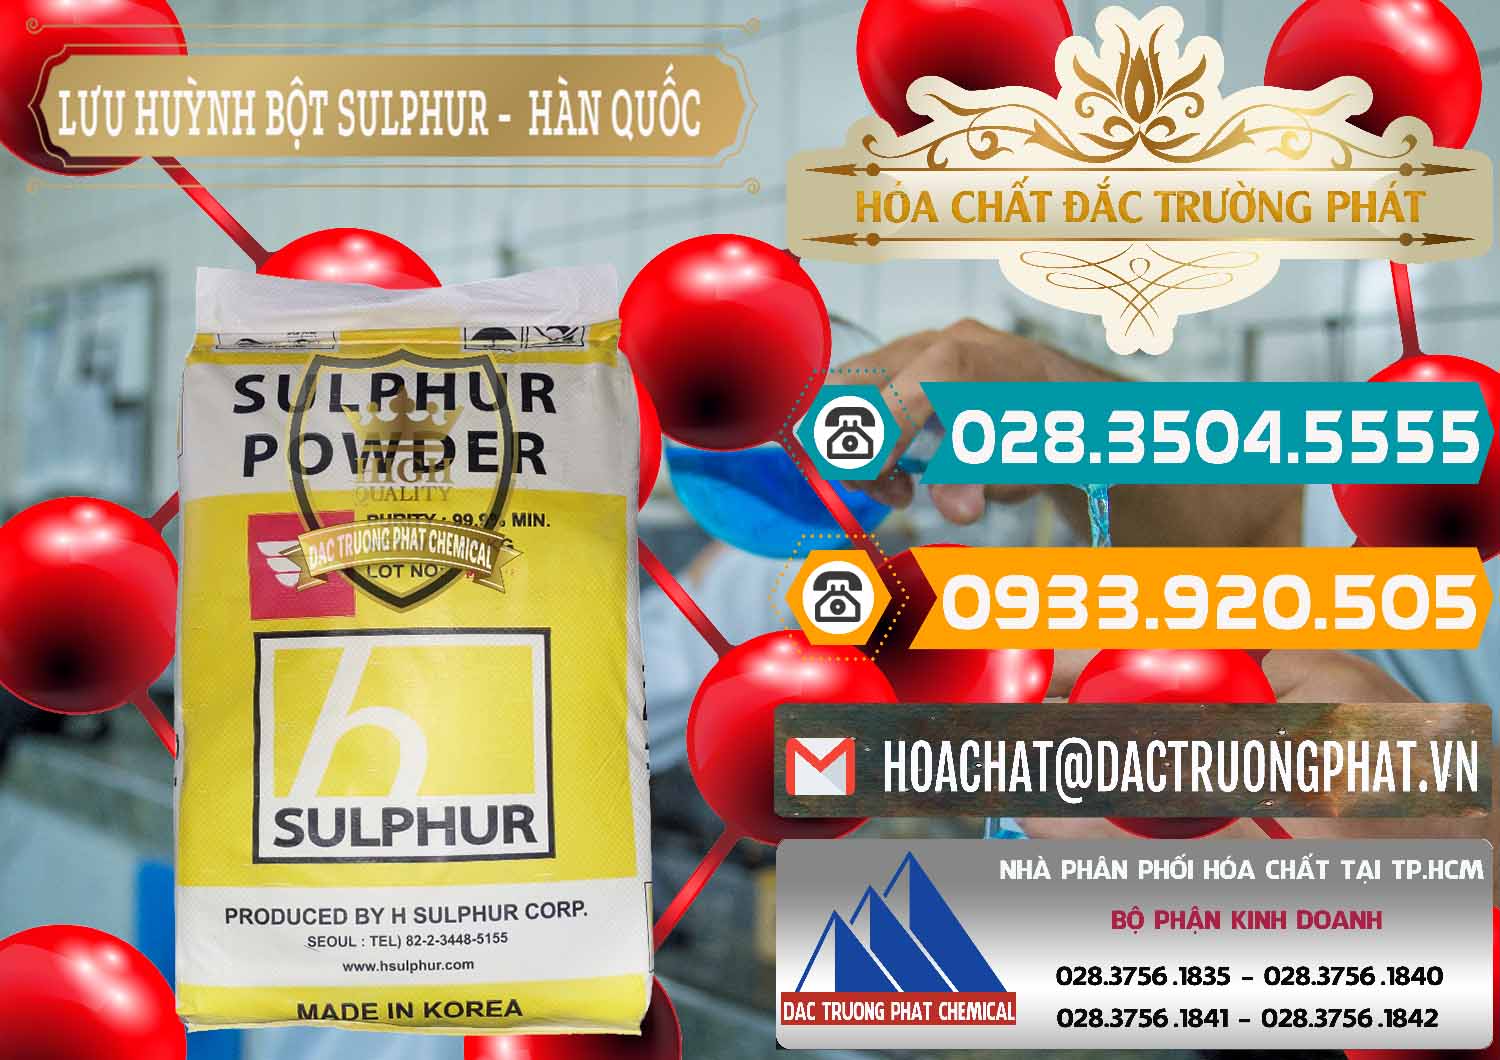 Chuyên phân phối _ bán Lưu huỳnh Bột - Sulfur Powder ( H Sulfur ) Hàn Quốc Korea - 0199 - Cty chuyên kinh doanh ( cung cấp ) hóa chất tại TP.HCM - congtyhoachat.vn